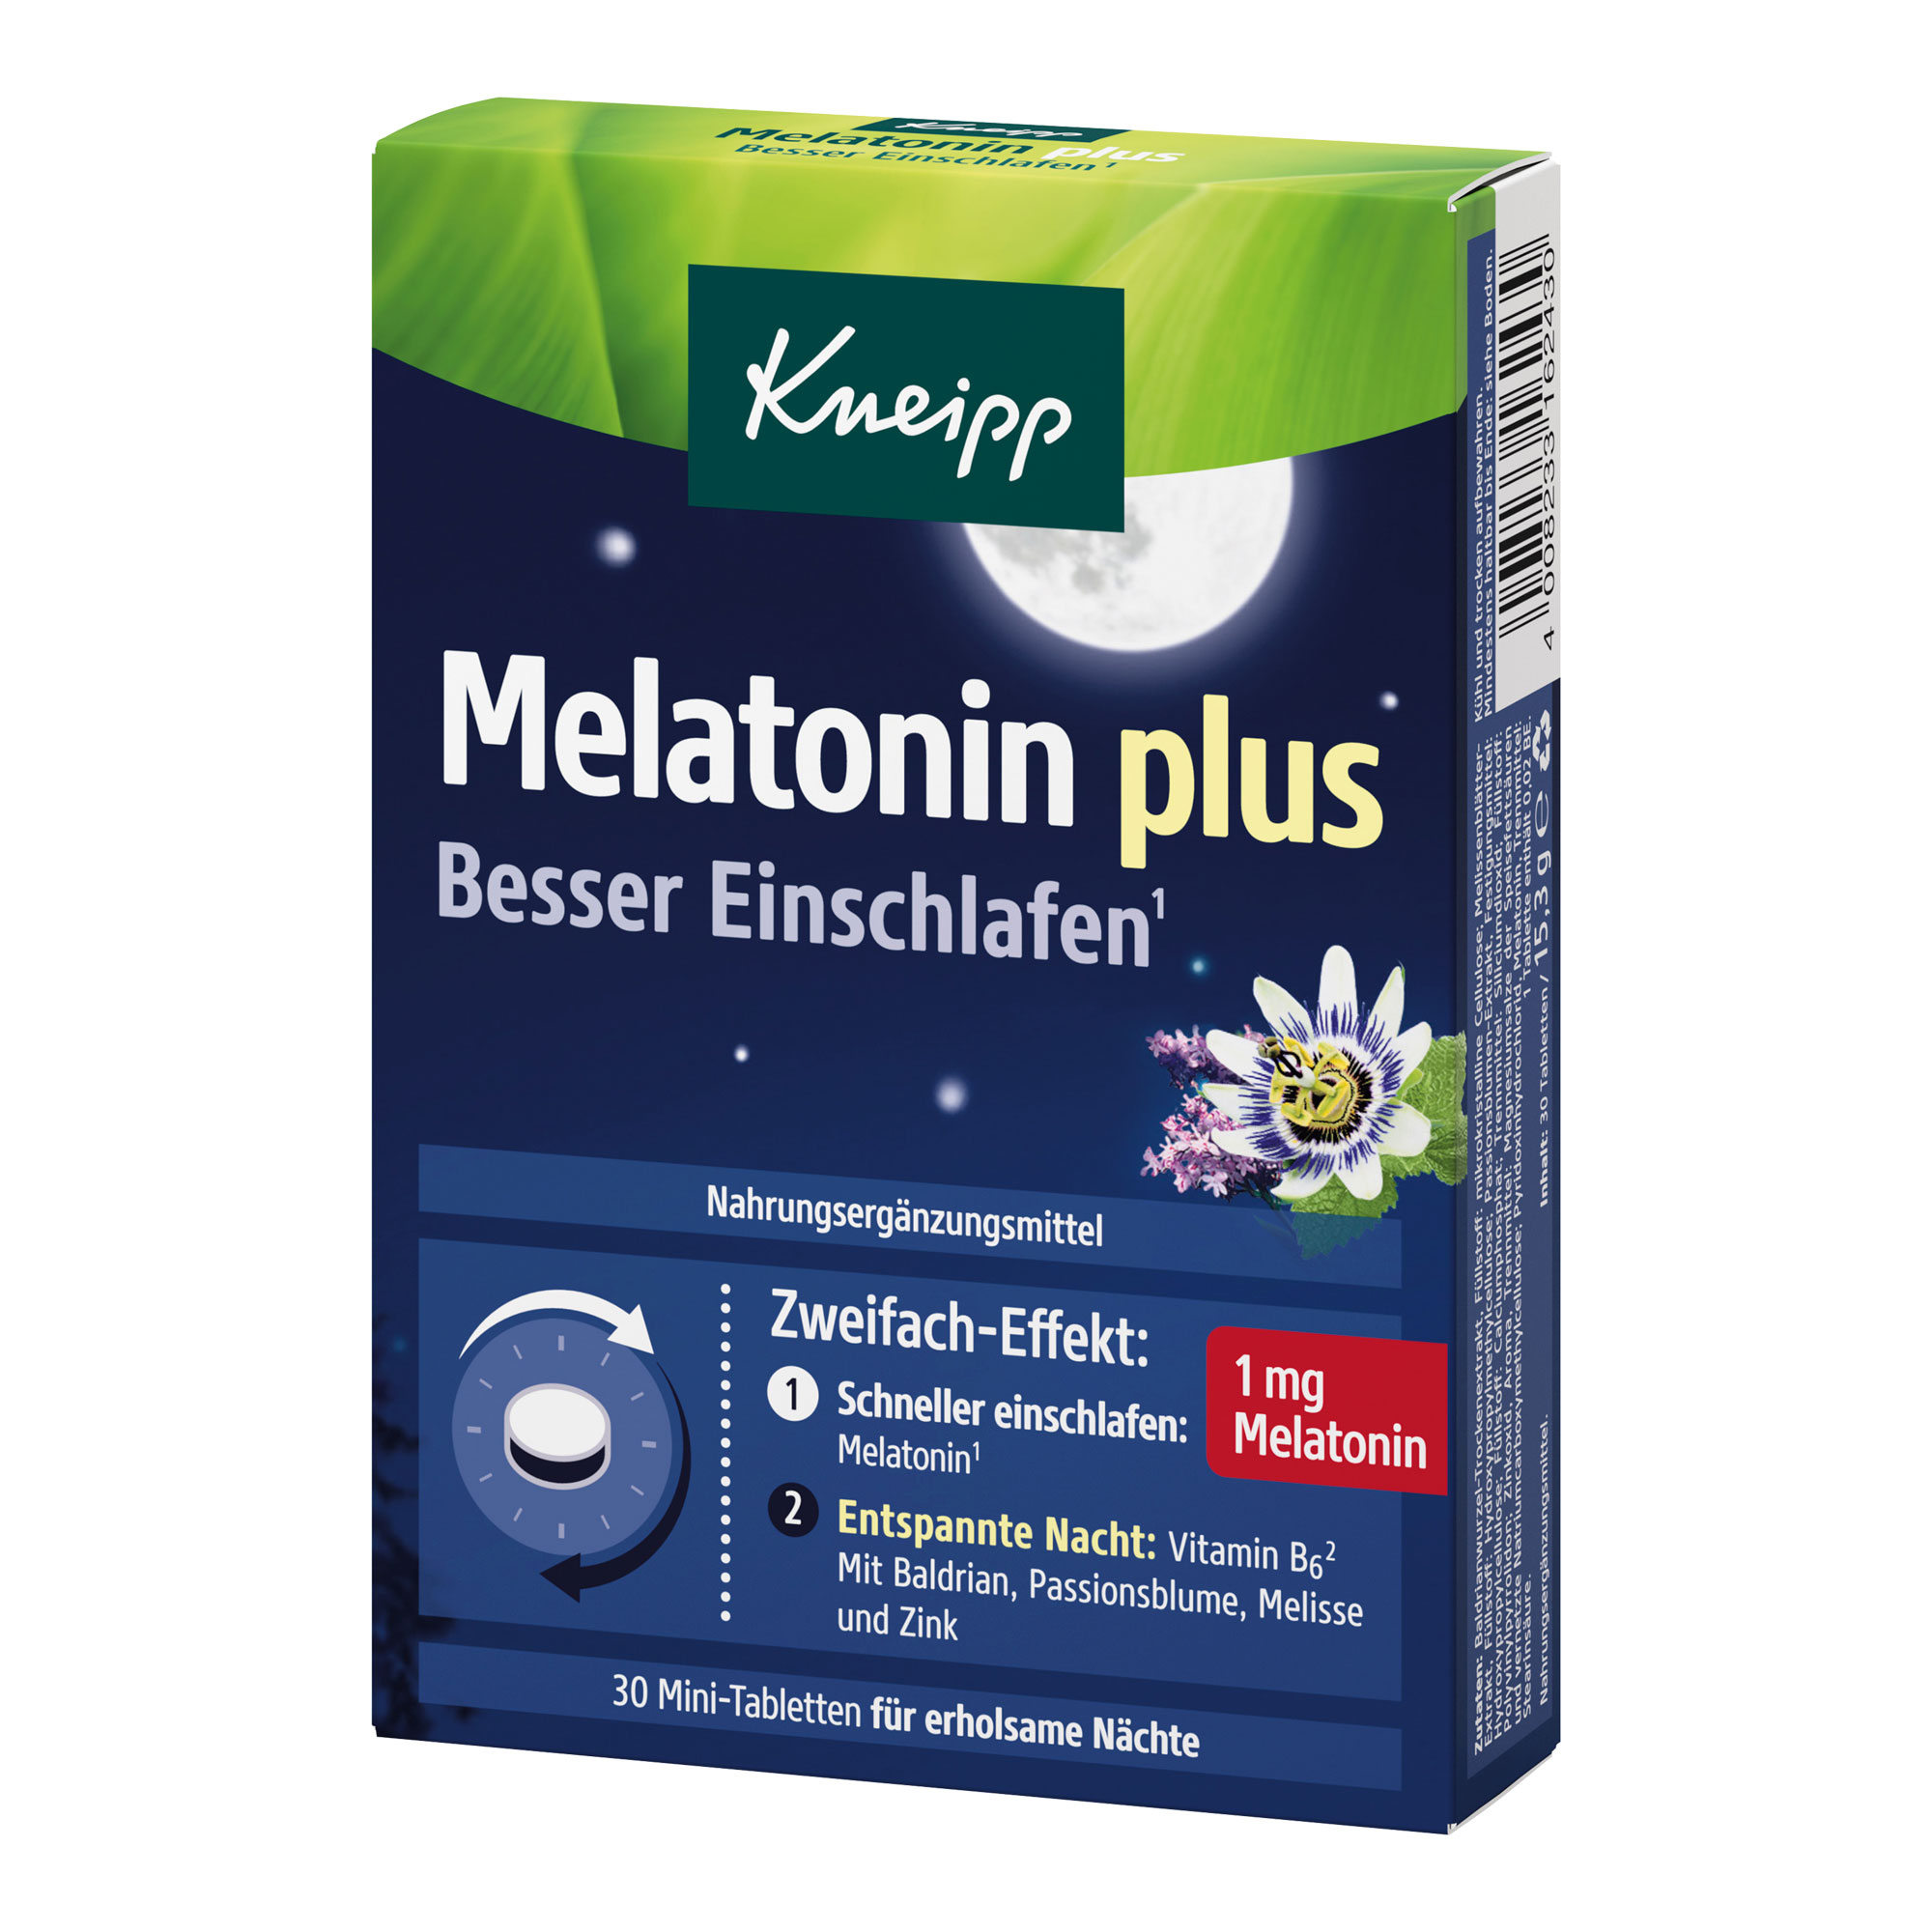 Nahrungsergänzungsmittel mit Melatonin. 2-Schicht-Tabletten unterstützen mit sinnvoll kombinierten Inhaltsstoffen.